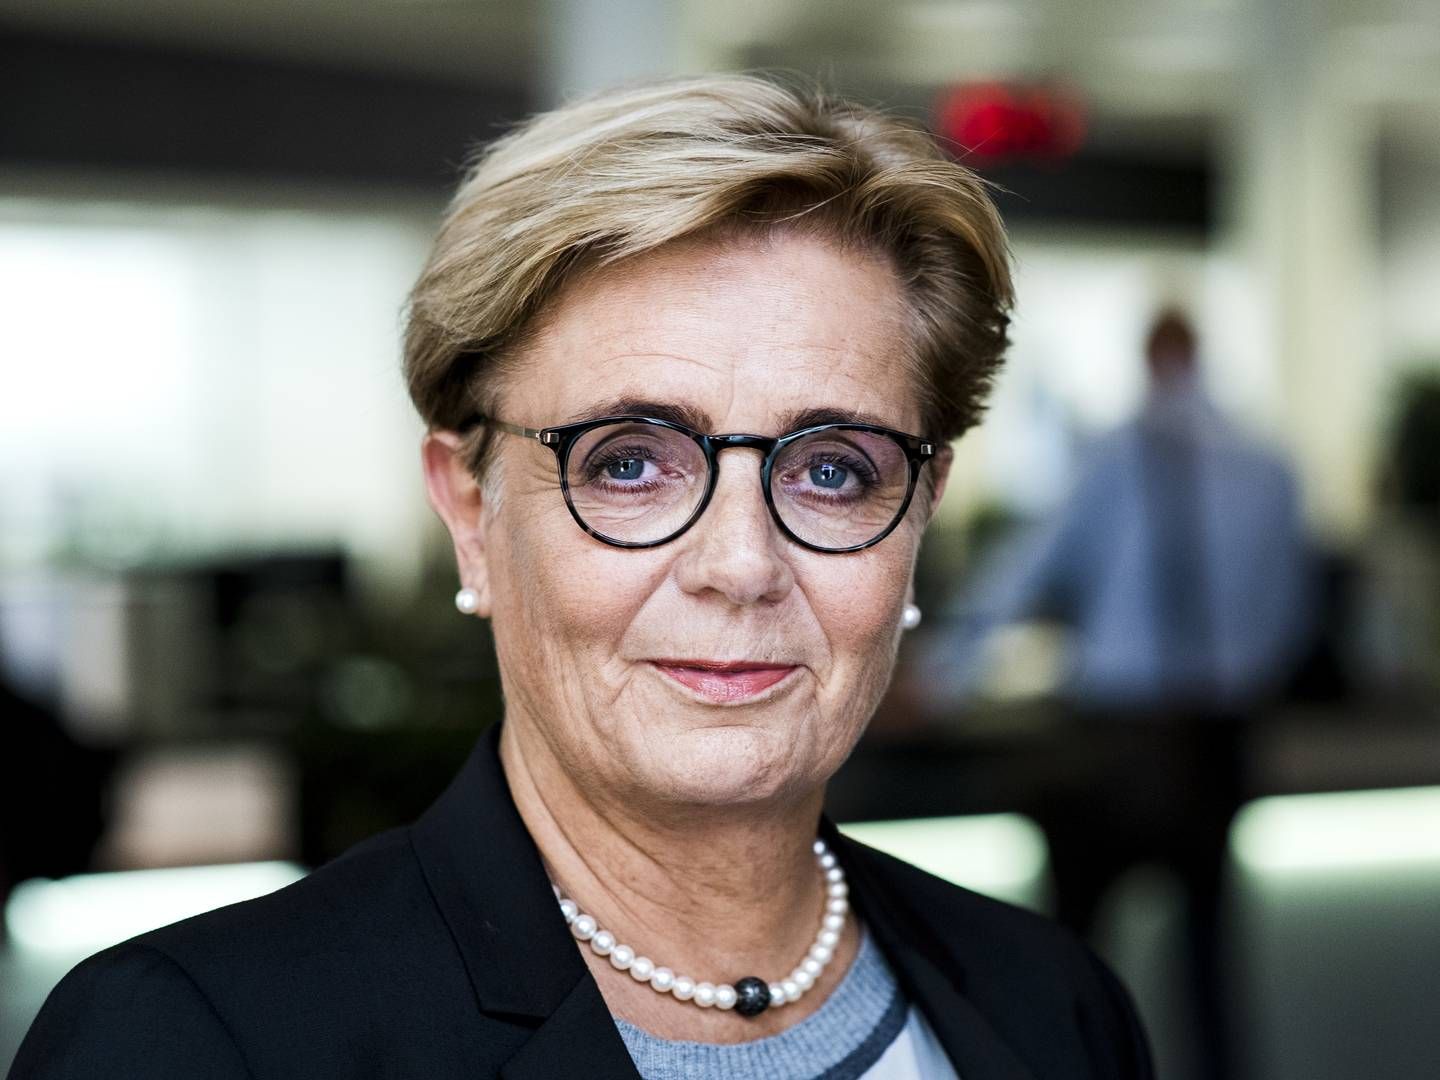 Karen Frøsig har haft en stigning på omkring 600.000 kroner i samlet løn sammenlignet med 2020. | Foto: Sydbank/PR